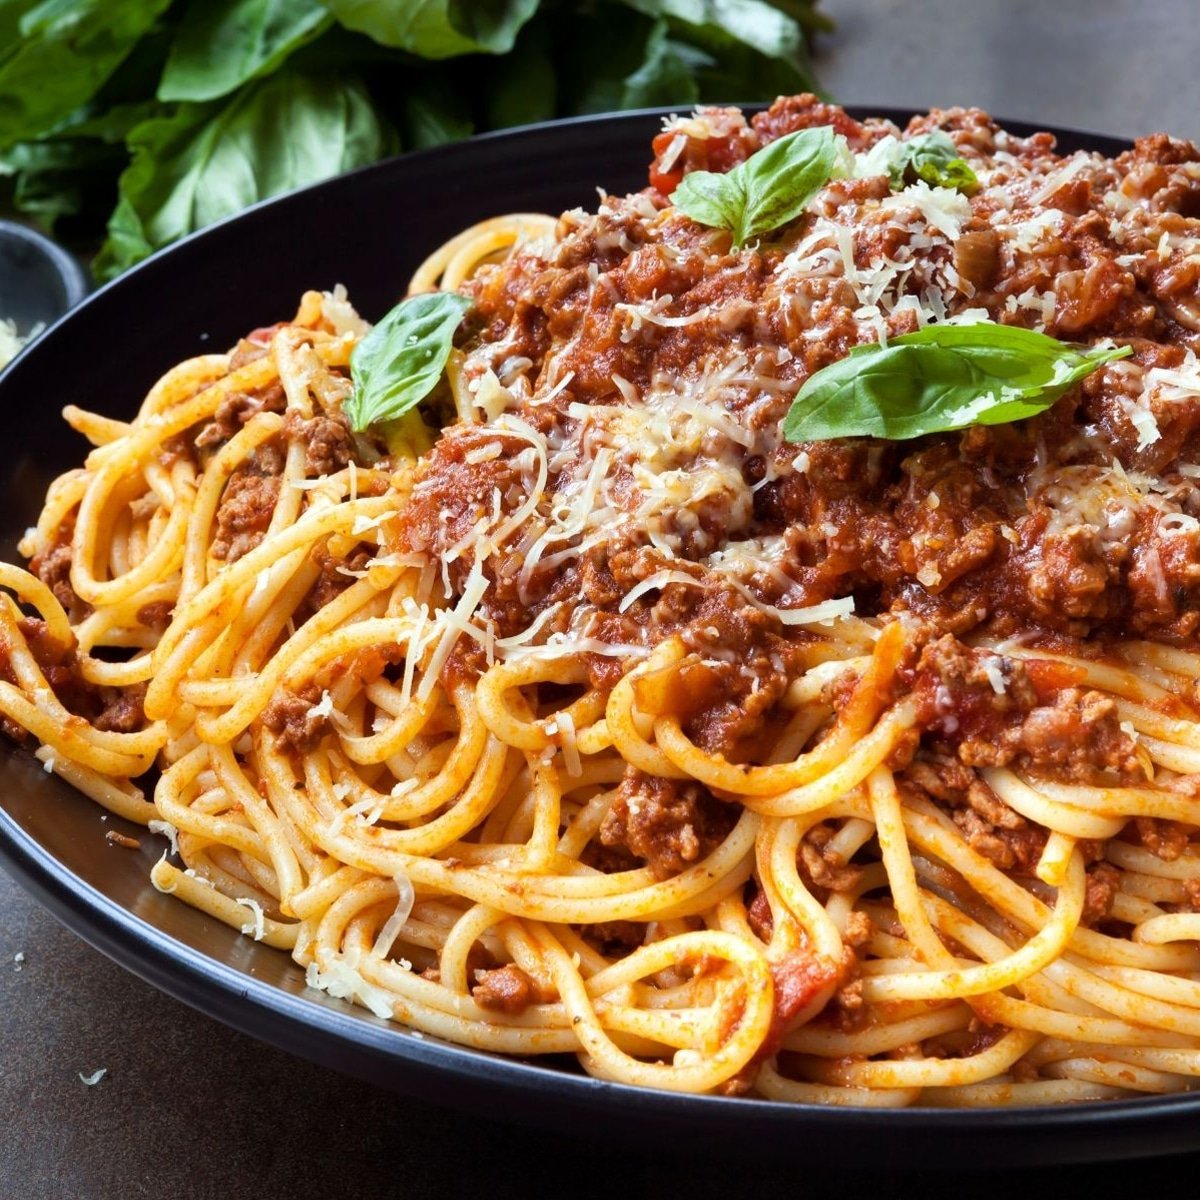 Болоньезе спагетти на черной тарелке с гарниром из пармезана и базилика.